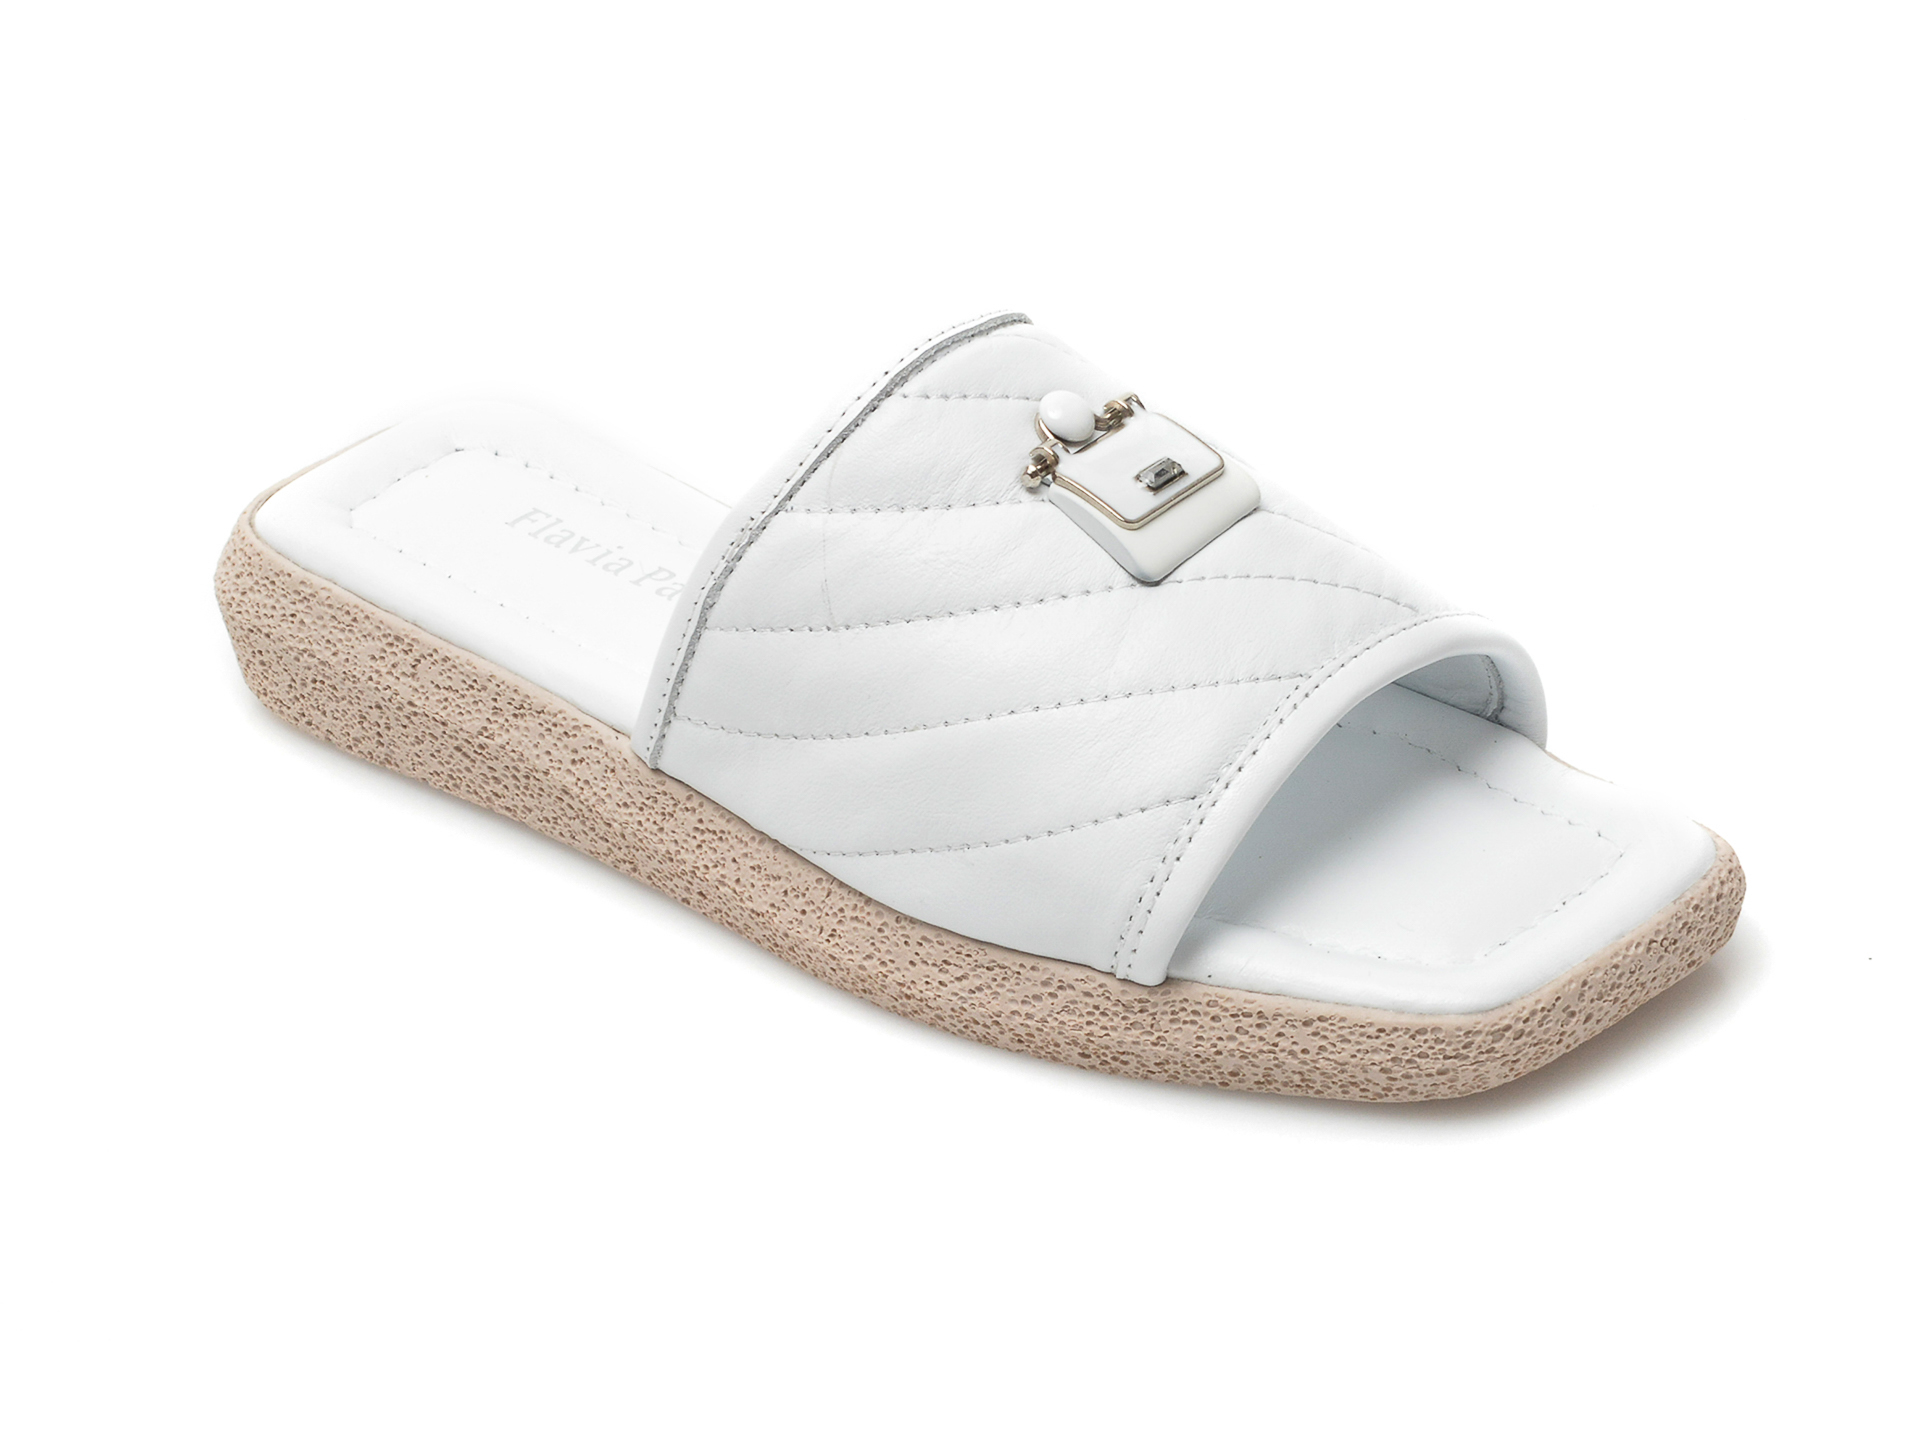 Papuci FLAVIA PASSINI albi, 26902, din piele naturala